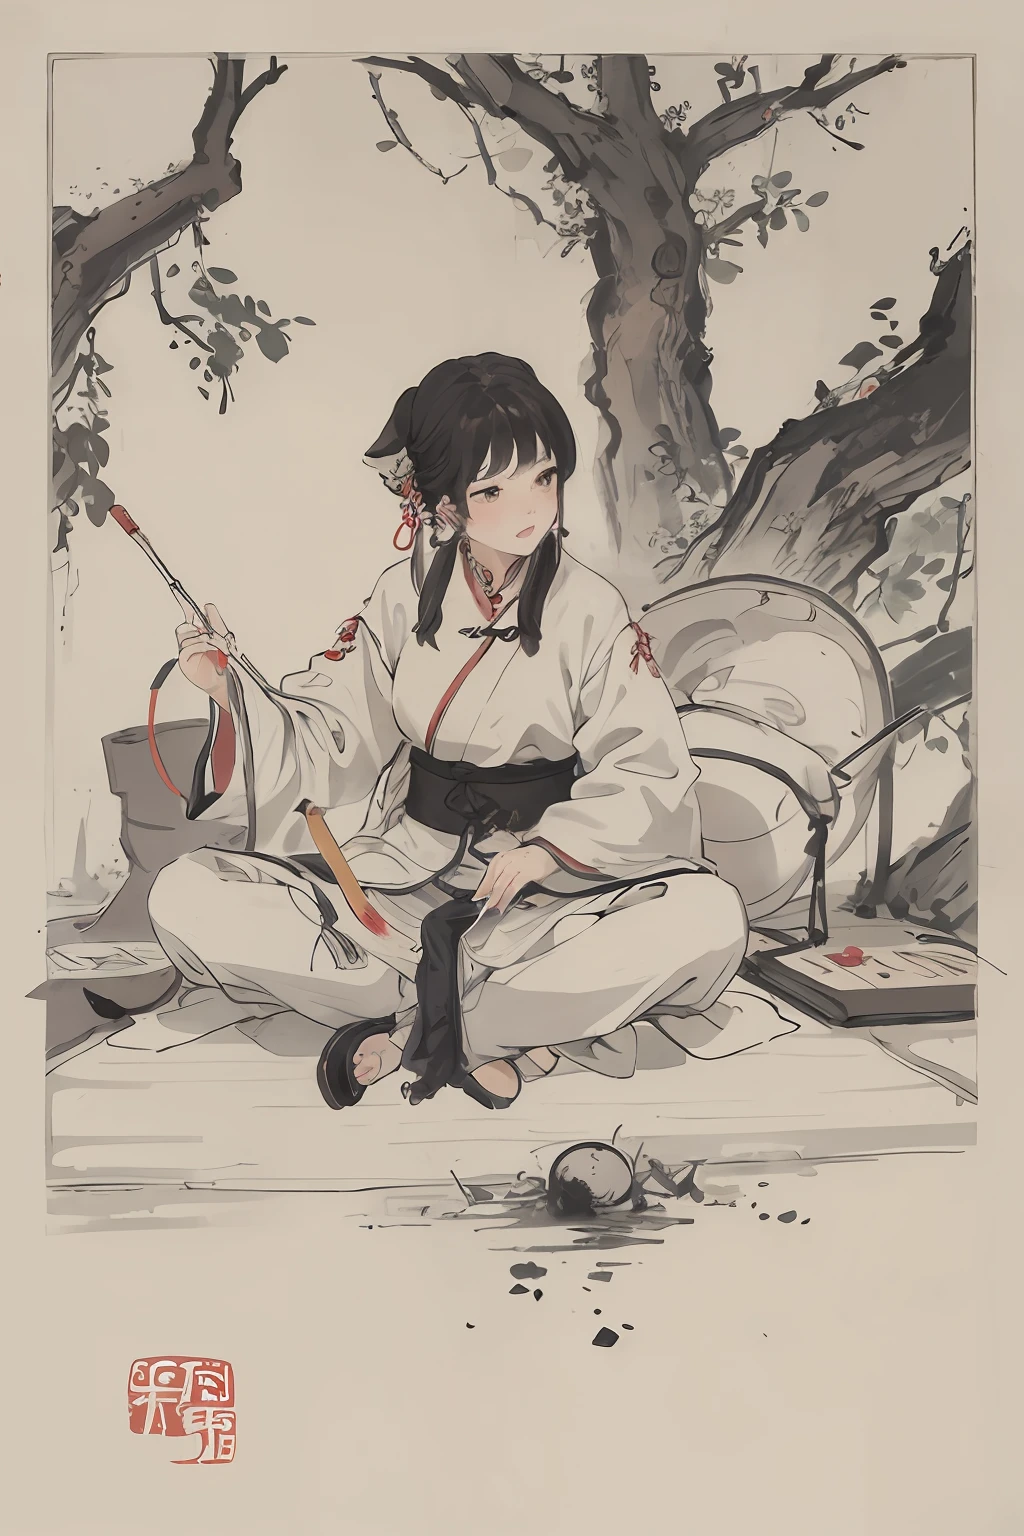 (Obra de arte, melhor qualidade: 1.2), pintura a tinta tradicional chinesa, tiro com arco